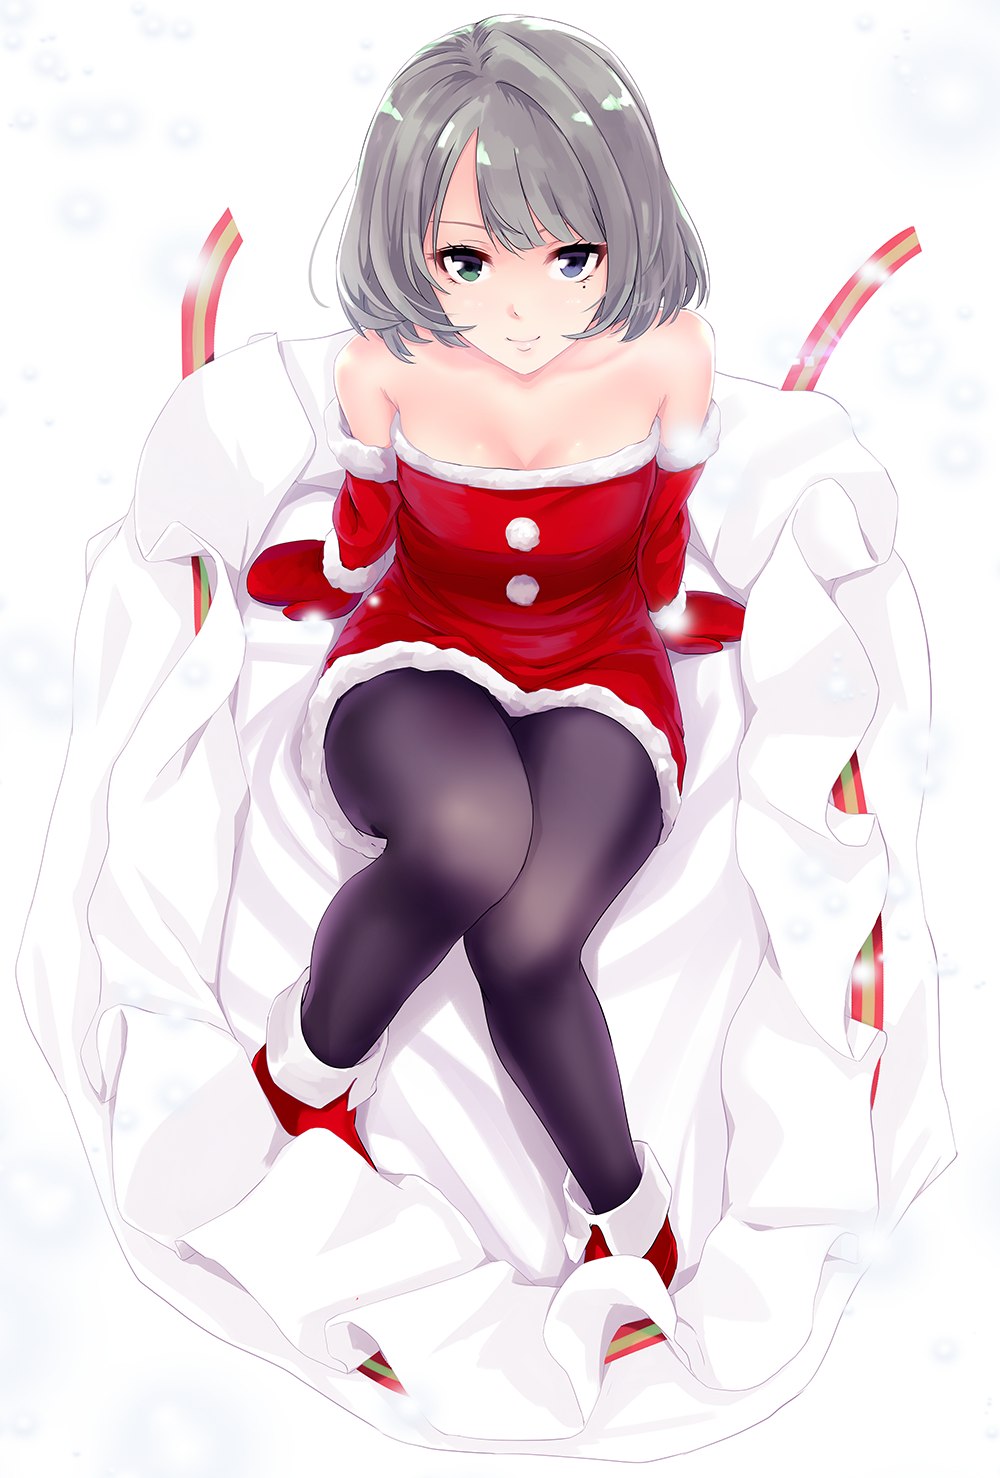 Sexy christmas anime girls